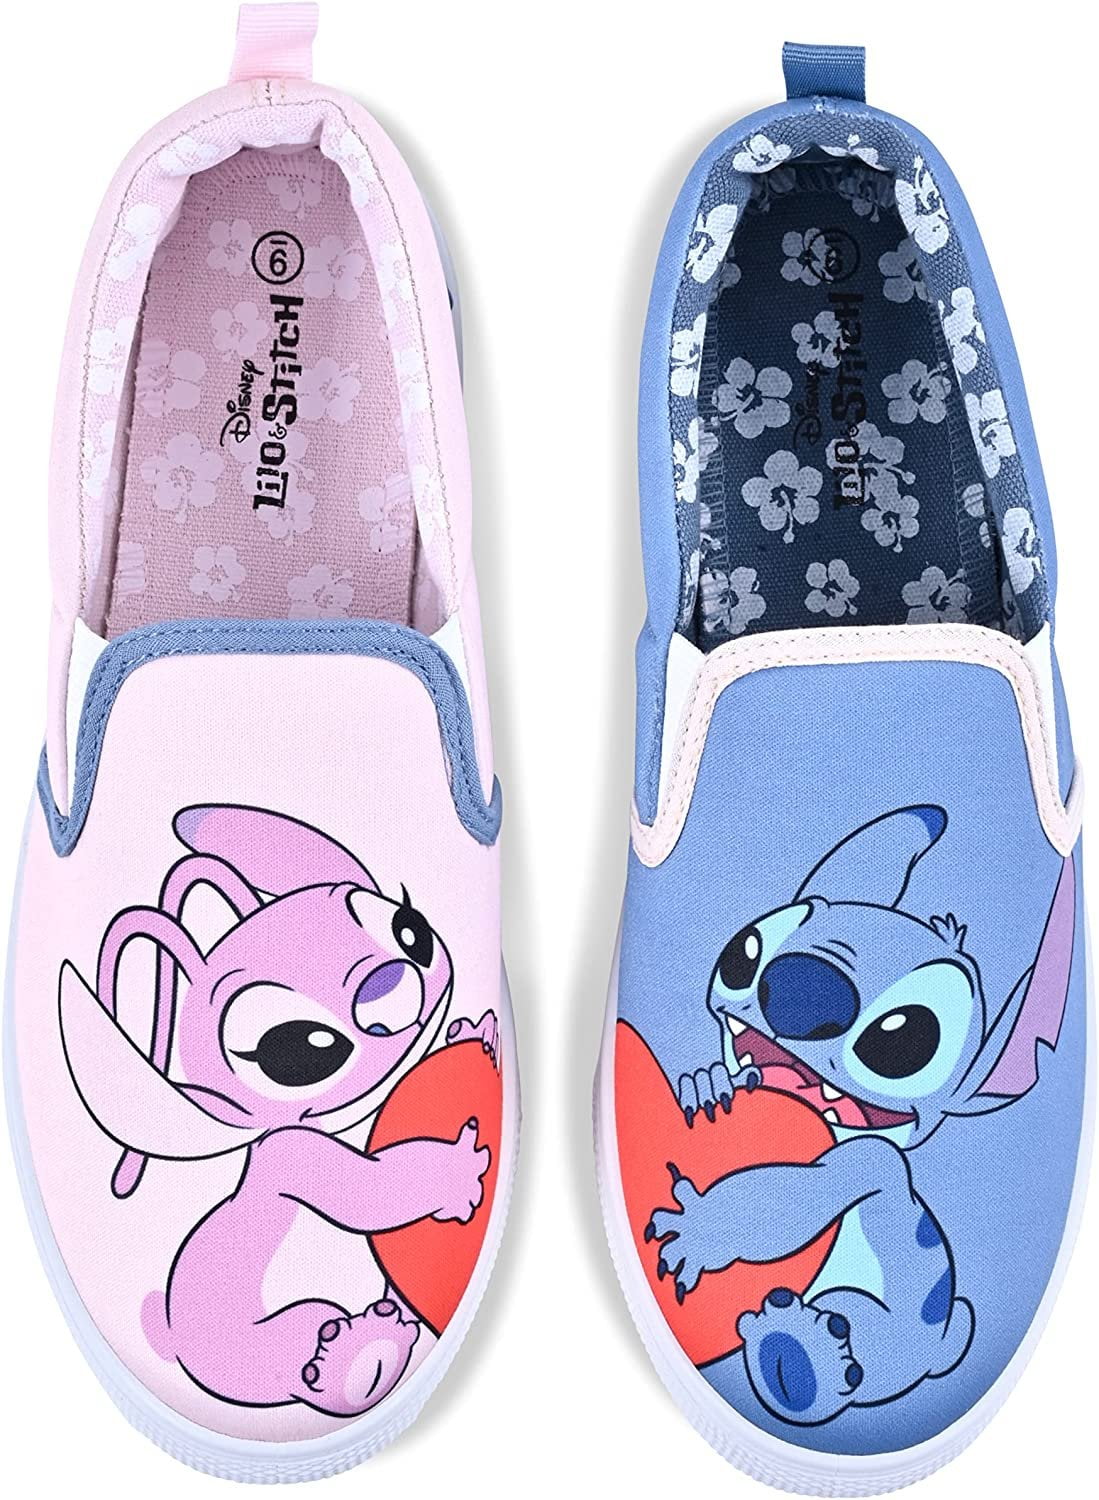 Disney Lilo & Stitch Ladies Shoes, Classic Slip On Canvas Shoes Light ...